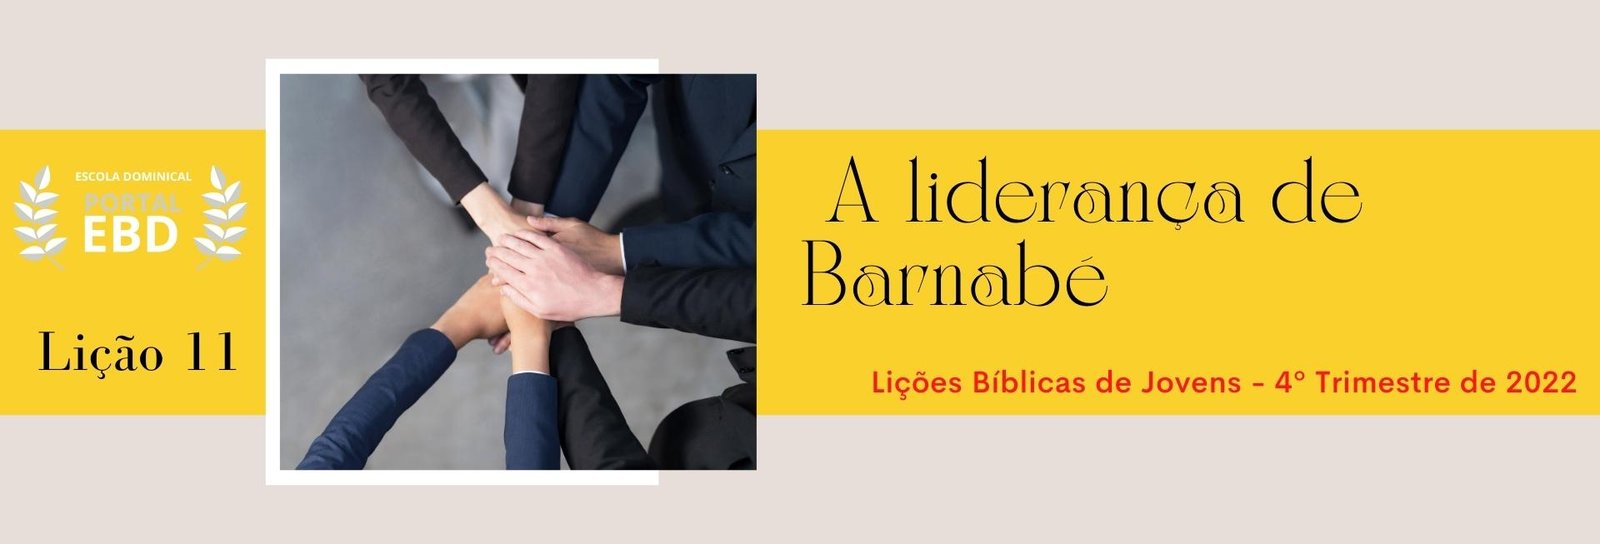 Lição 11 - A liderança de Barnabé II